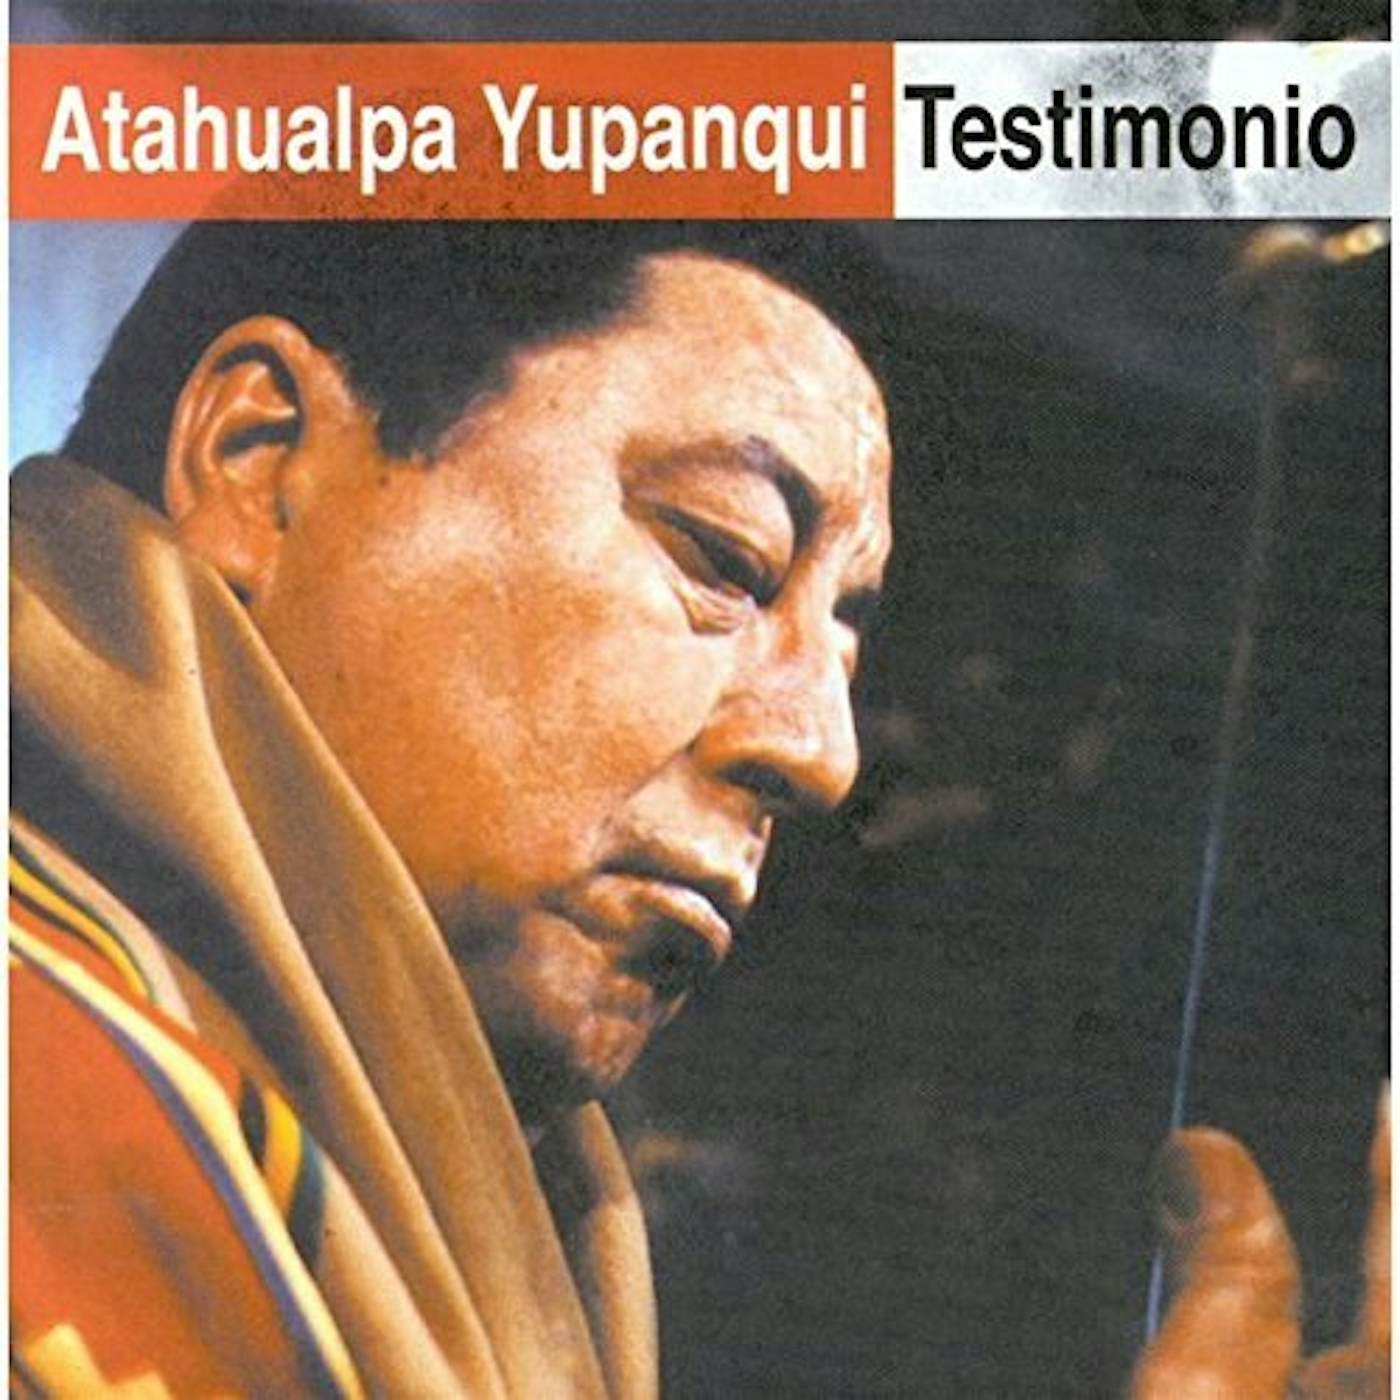 Atahualpa Yupanqui TESTIMONIO CD